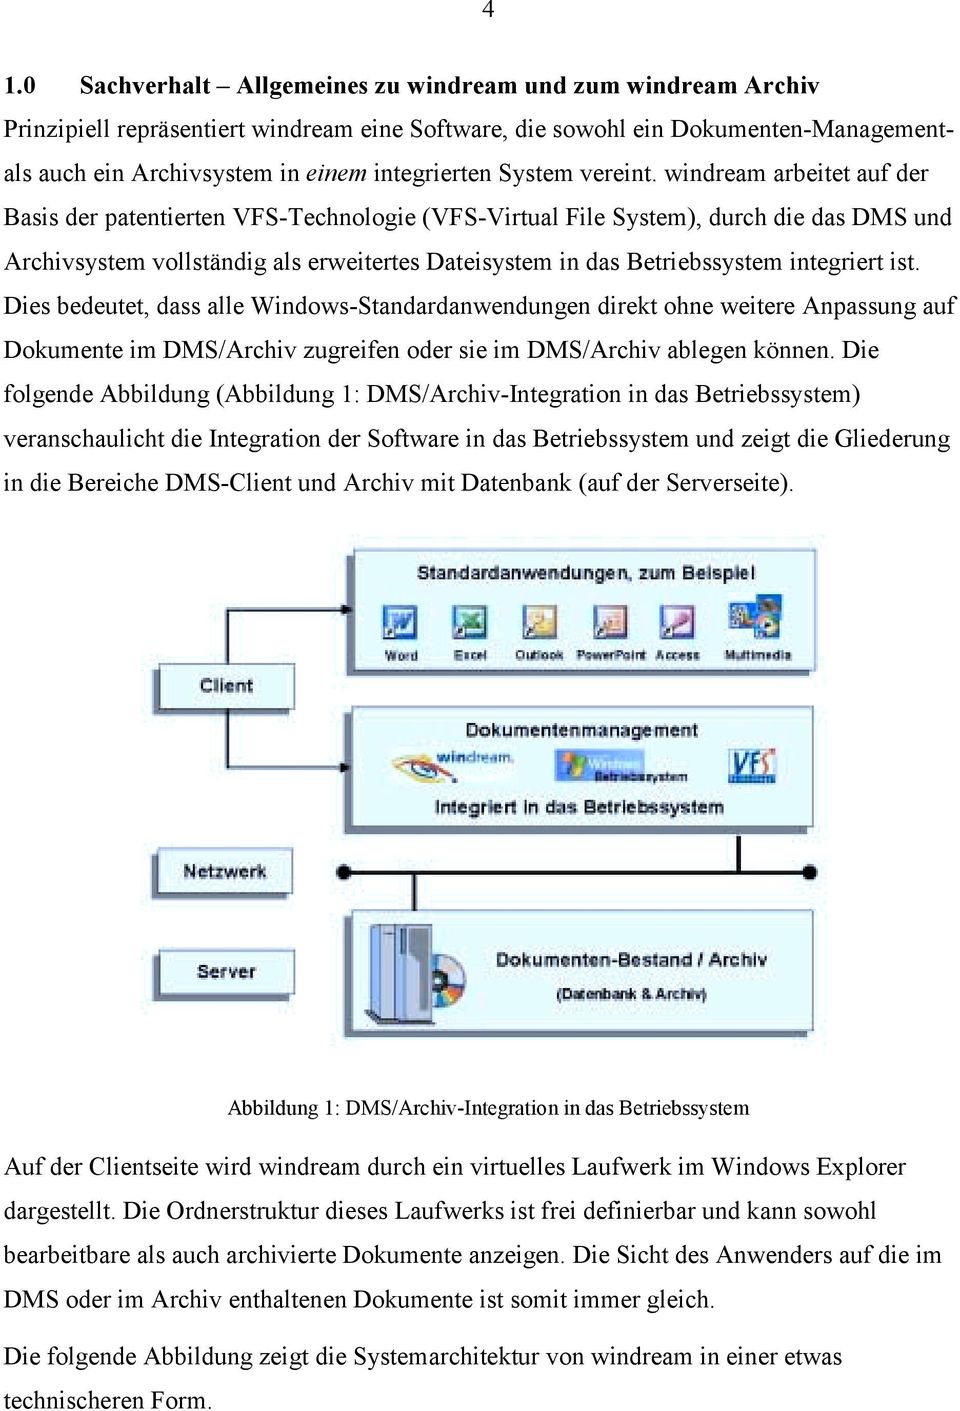 windream arbeitet auf der Basis der patentierten VFS-Technologie (VFS-Virtual File System), durch die das DMS und Archivsystem vollständig als erweitertes Dateisystem in das Betriebssystem integriert